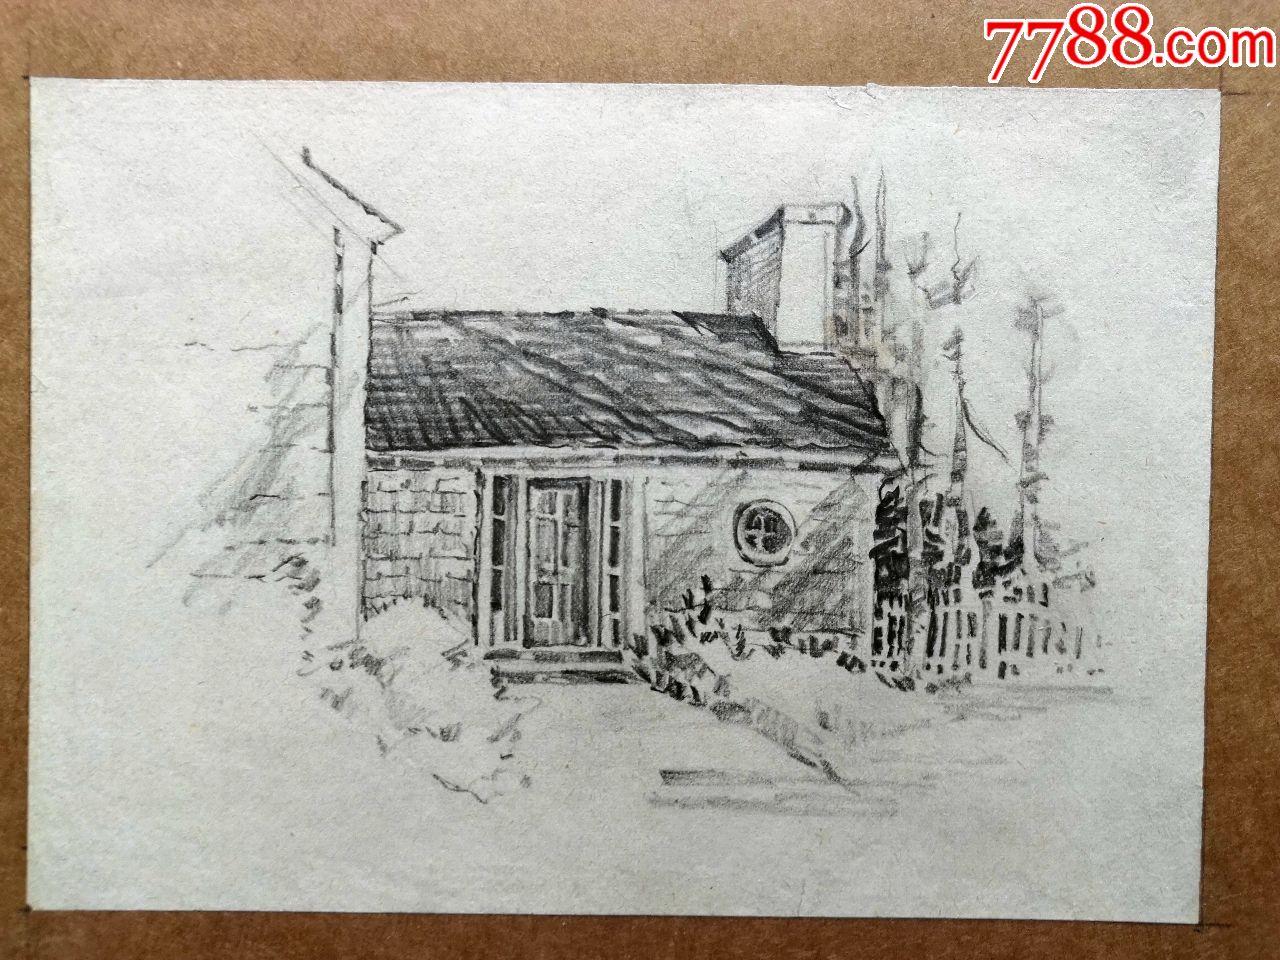 早期无款铅笔素描速写画稿原稿《房屋1》